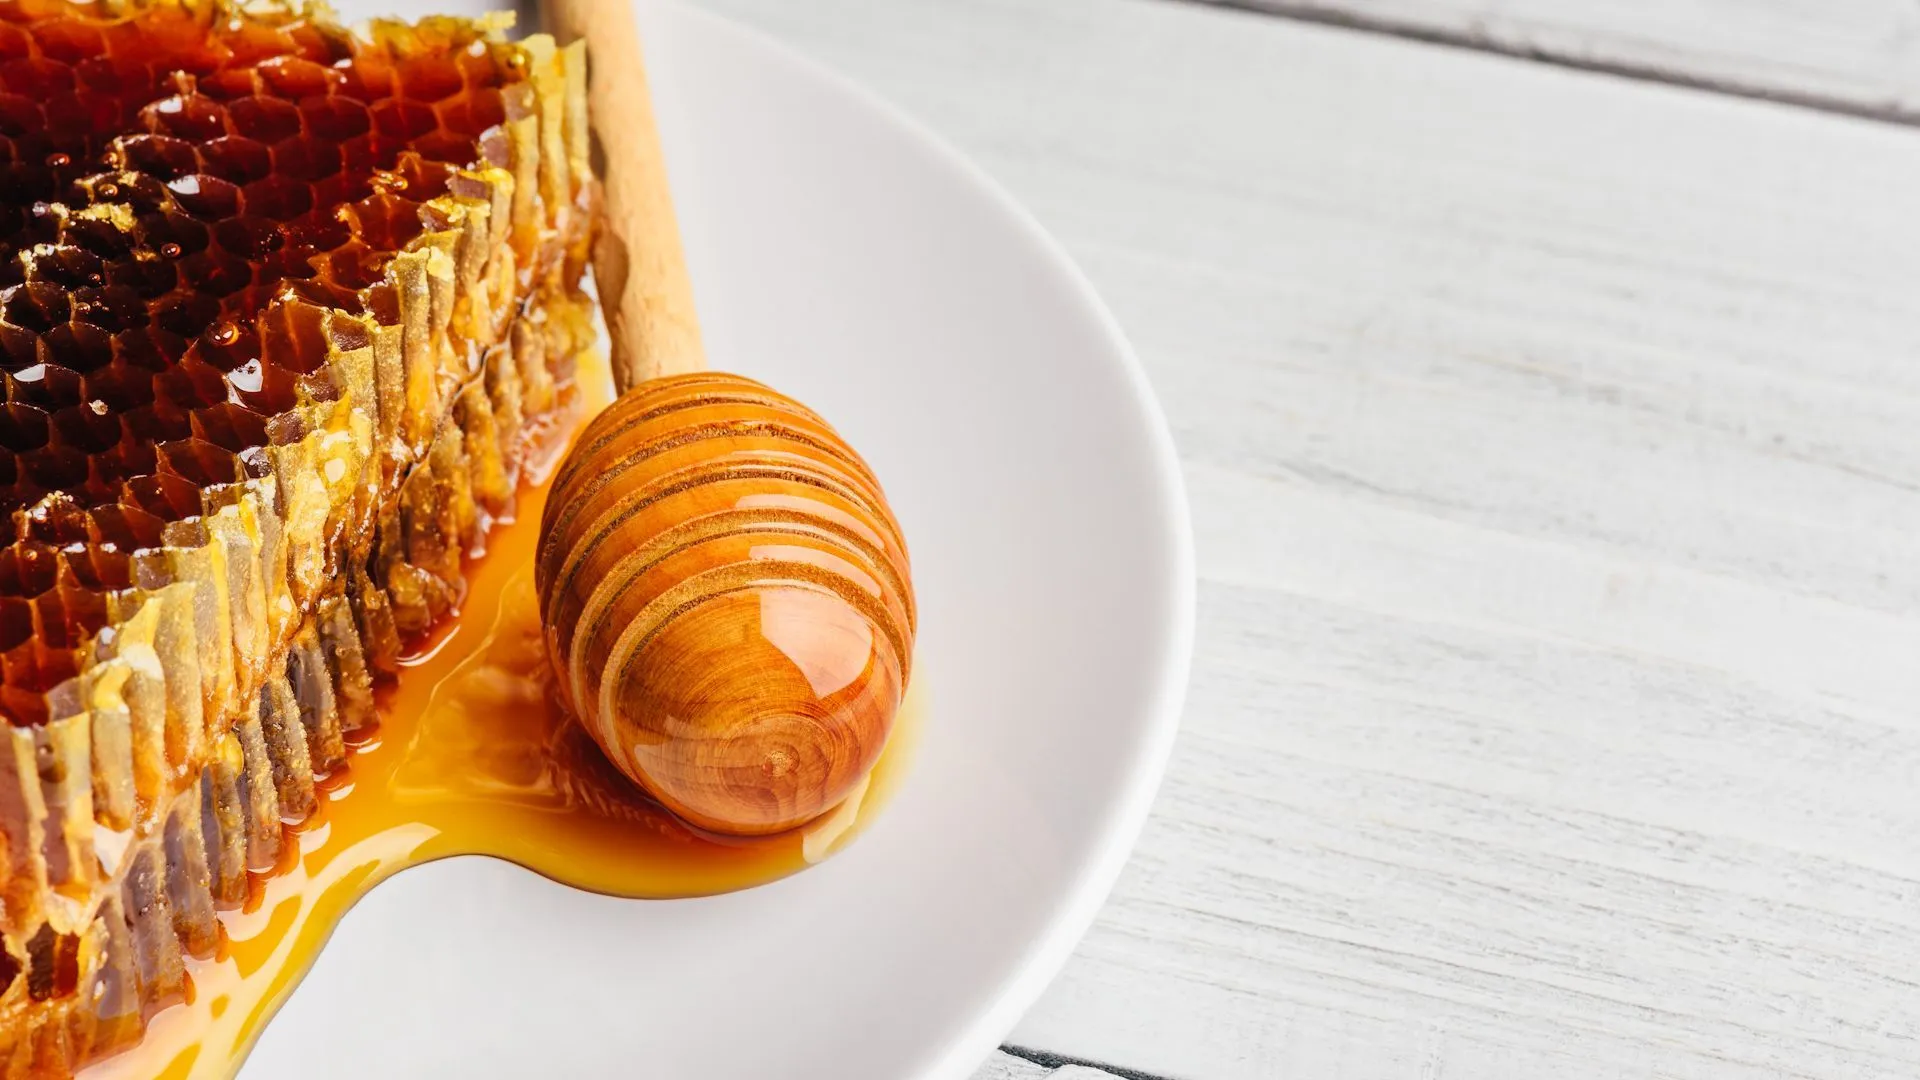 Ernährungsmythos widerlegt: Darum ist Honig nicht wirklich gesund